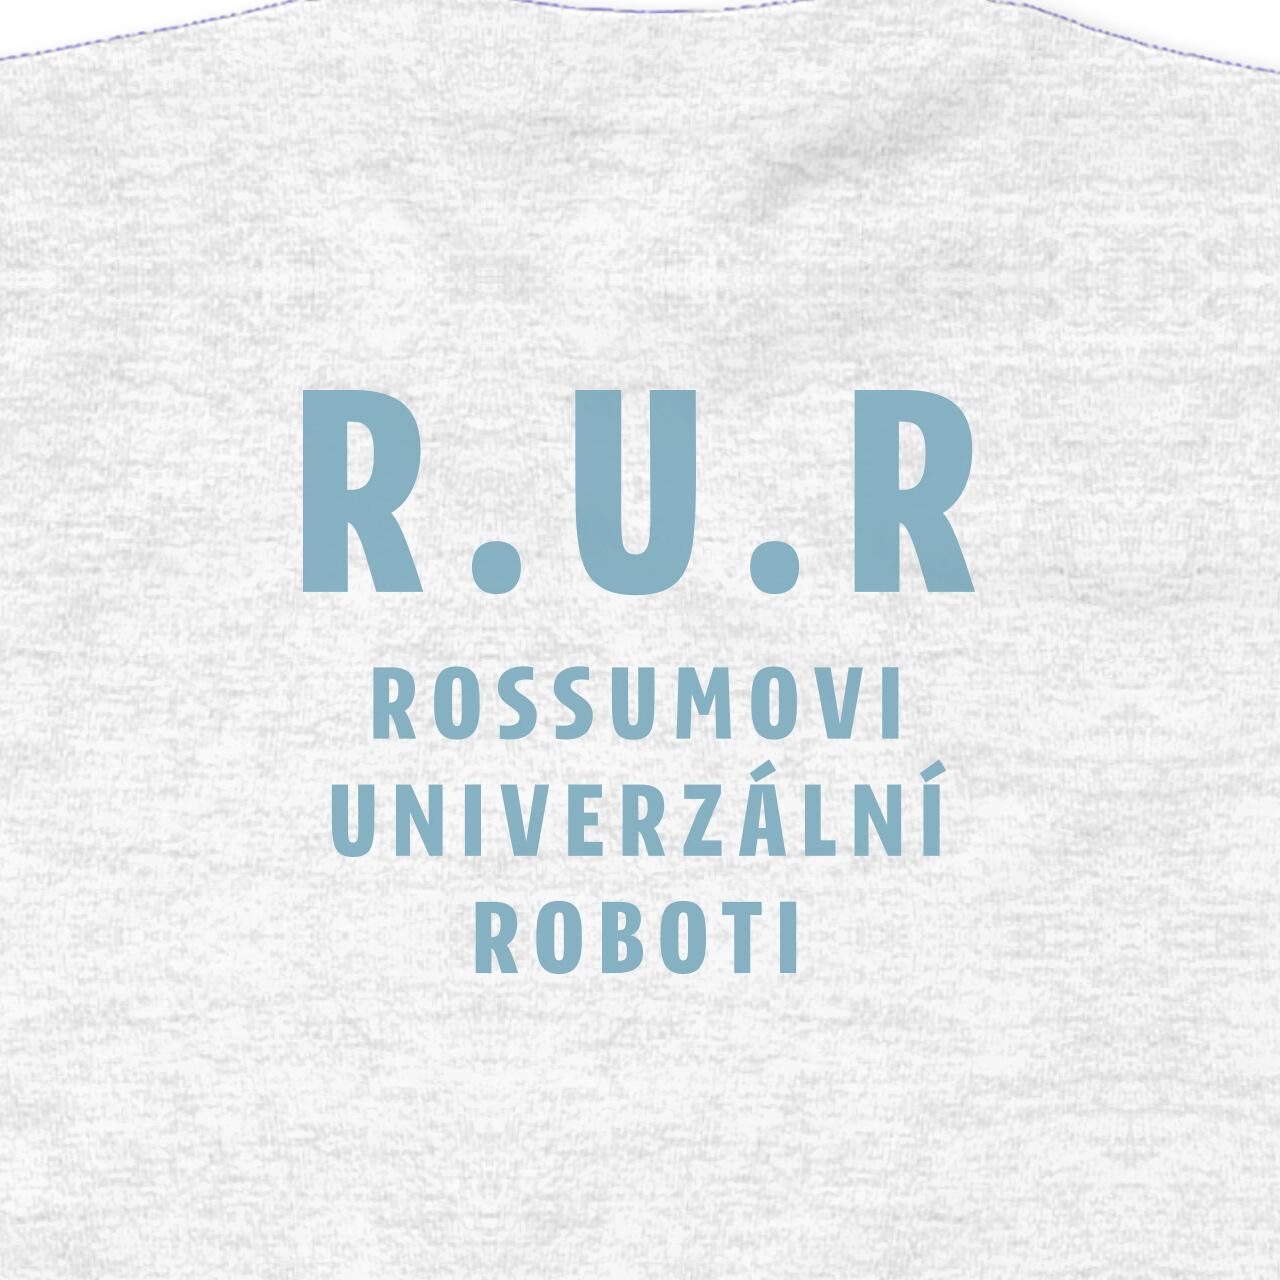 ROBOTI　A　Online　Store　ROSSUMOVI　(blue)　El　UNIVERZALNI　ashgray　Topo